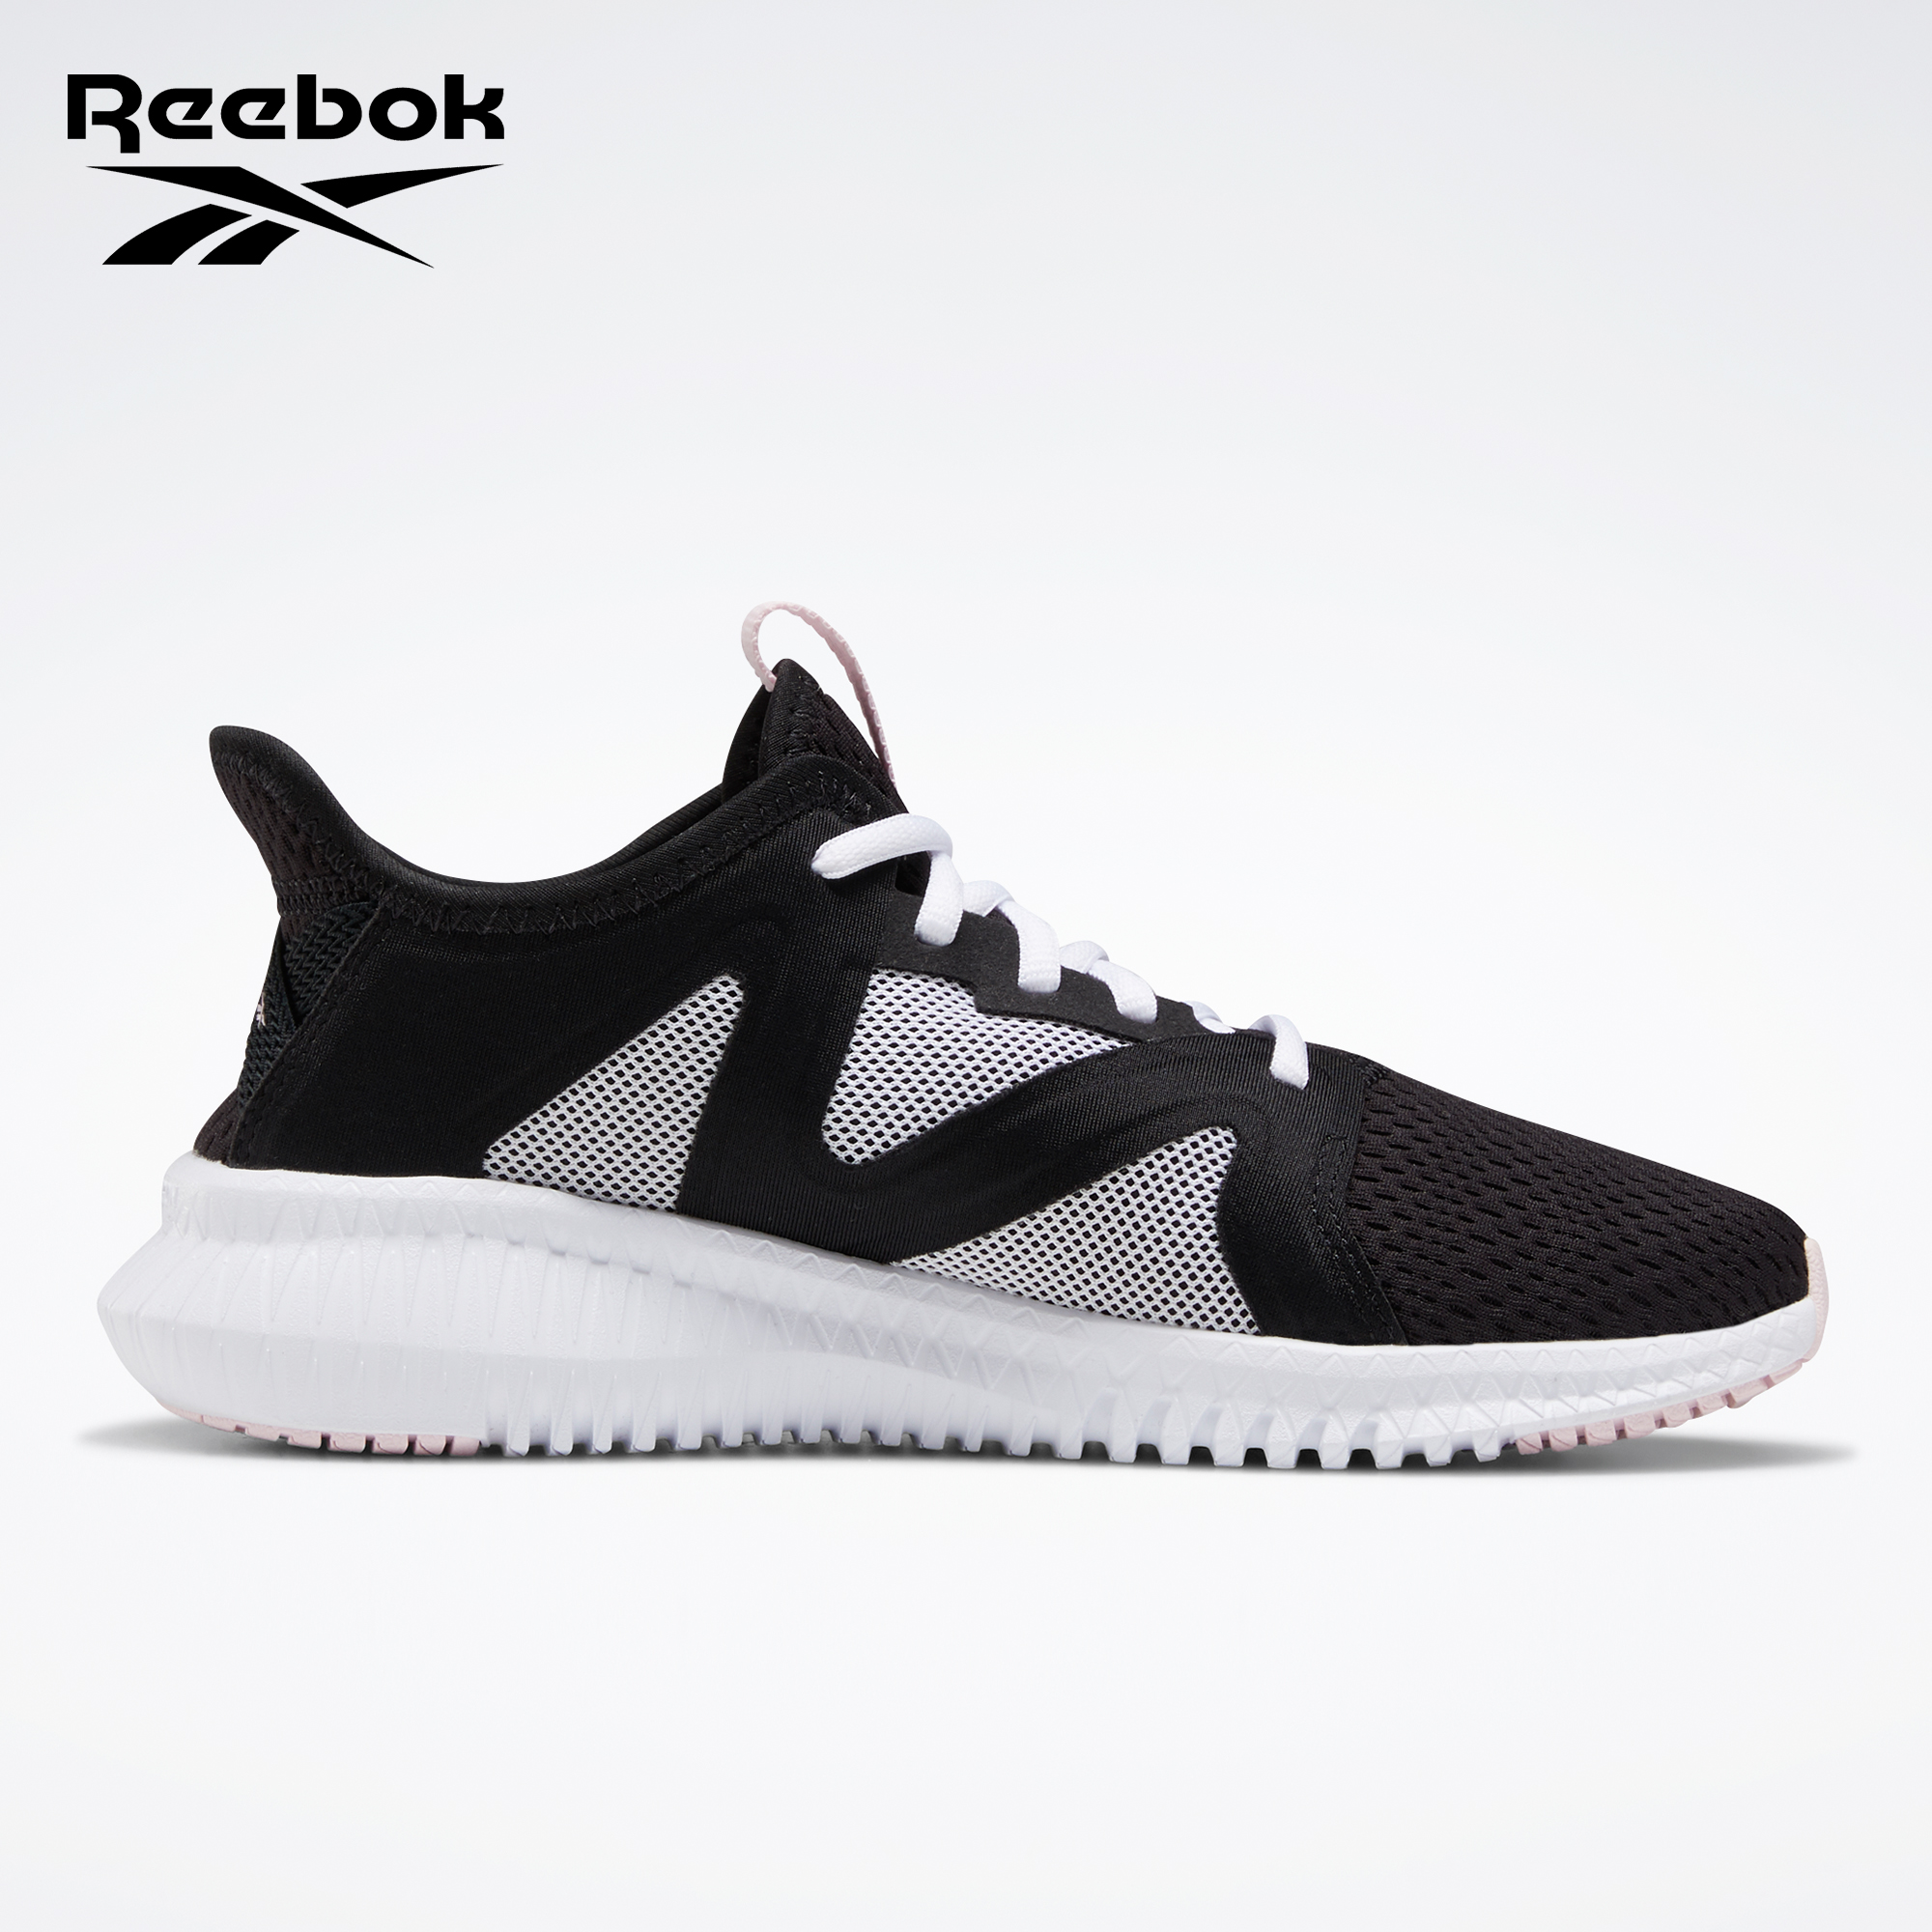 Reebok Flexagon 3.0 Training Shoes for 